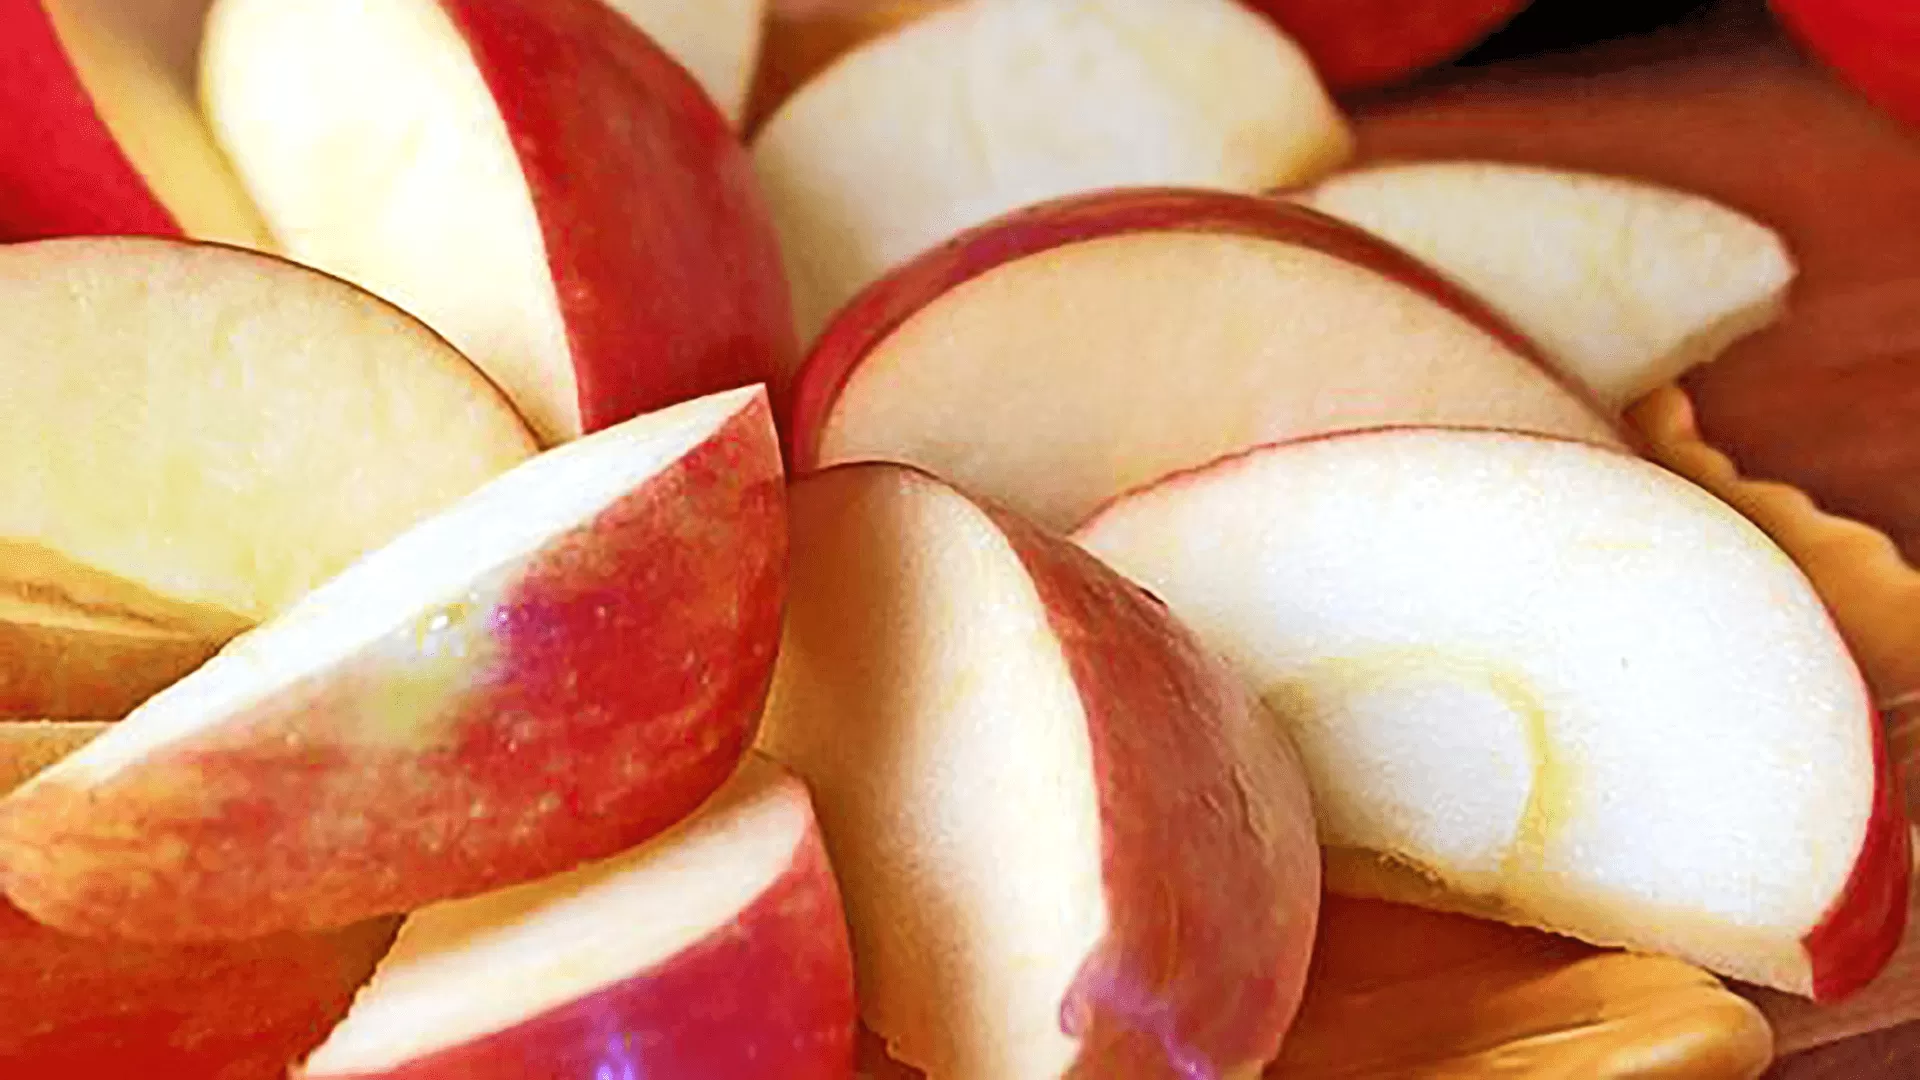 Sliced Fresh Apples